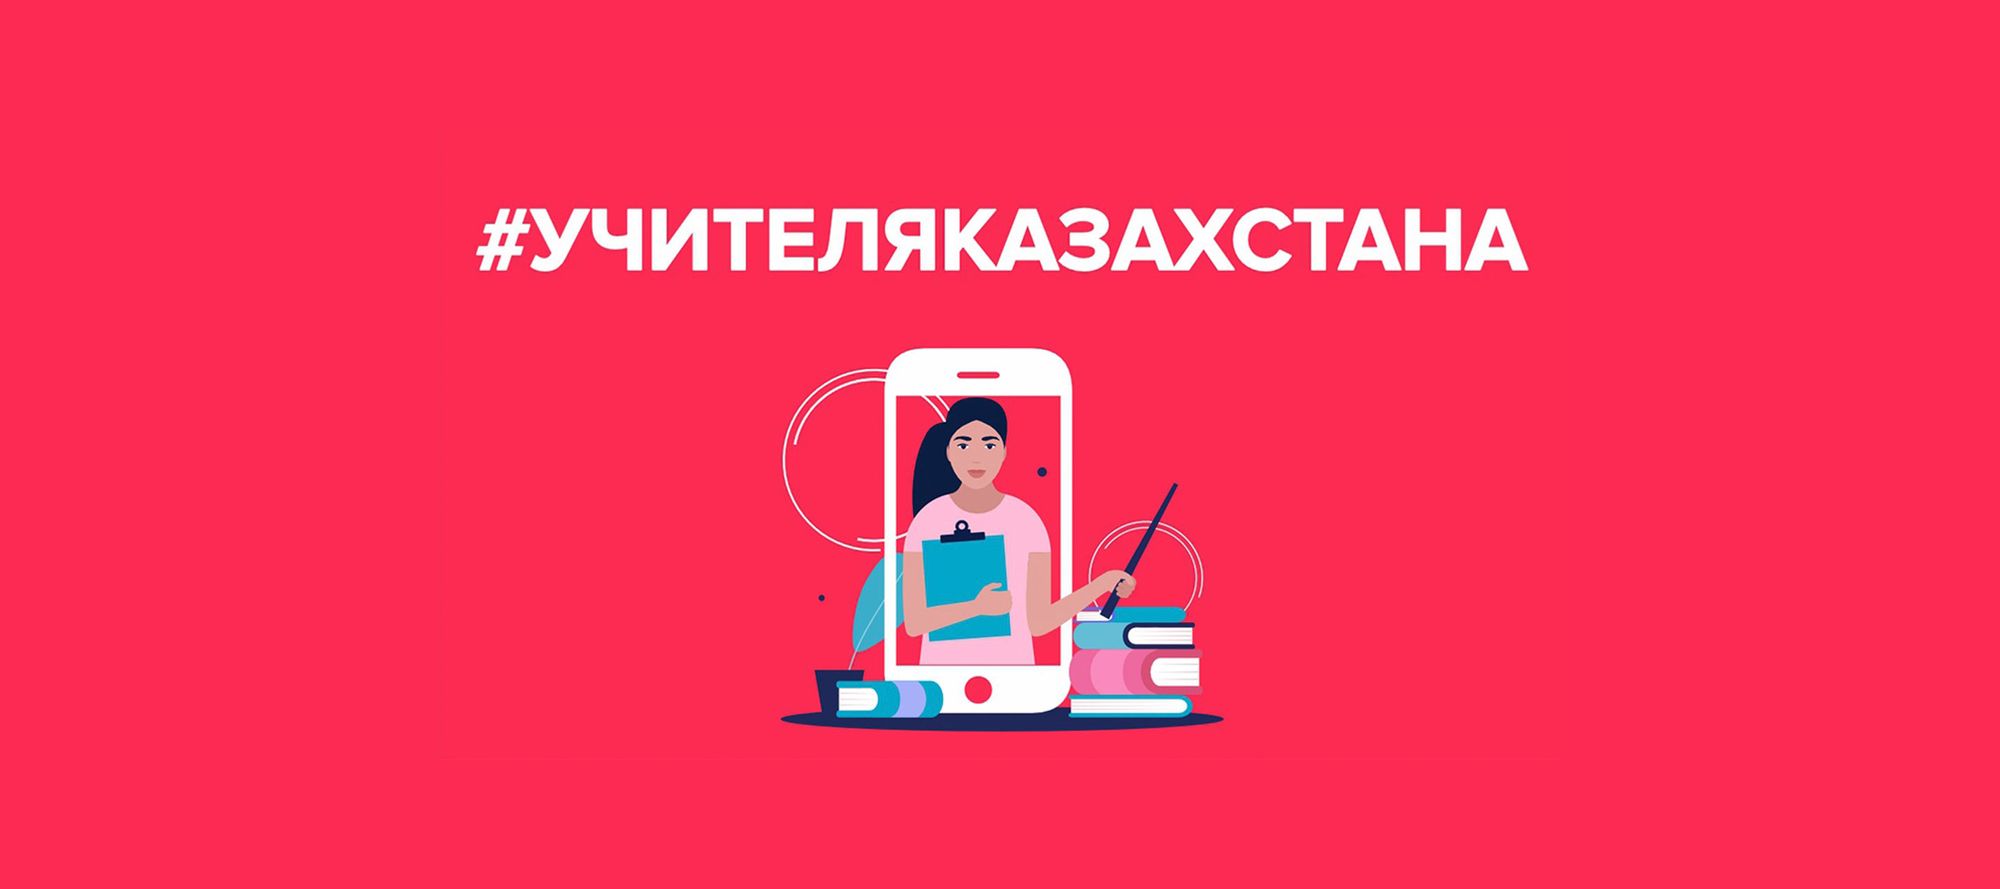 В Казахстане стартует конкурс для учителей в TikTok